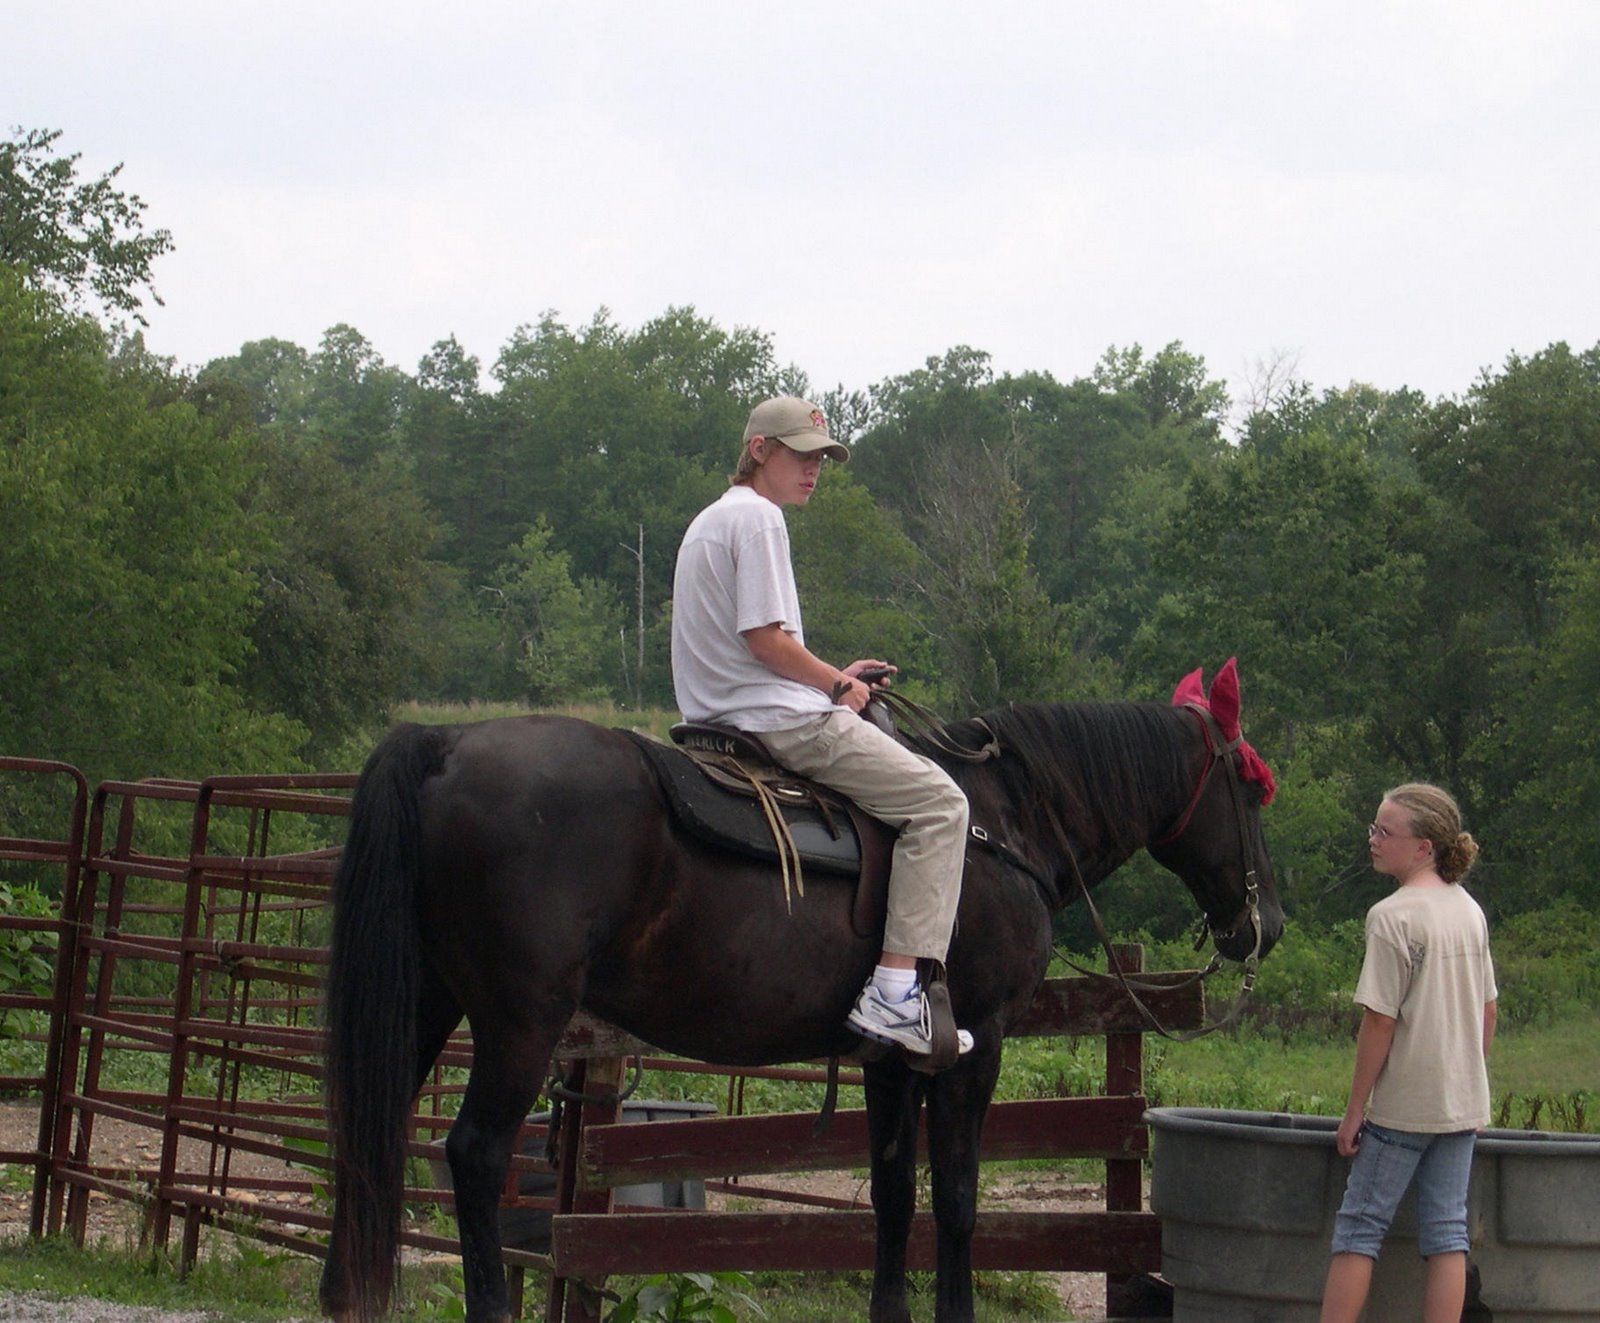 [Zachary+on+horseback+2.jpg]